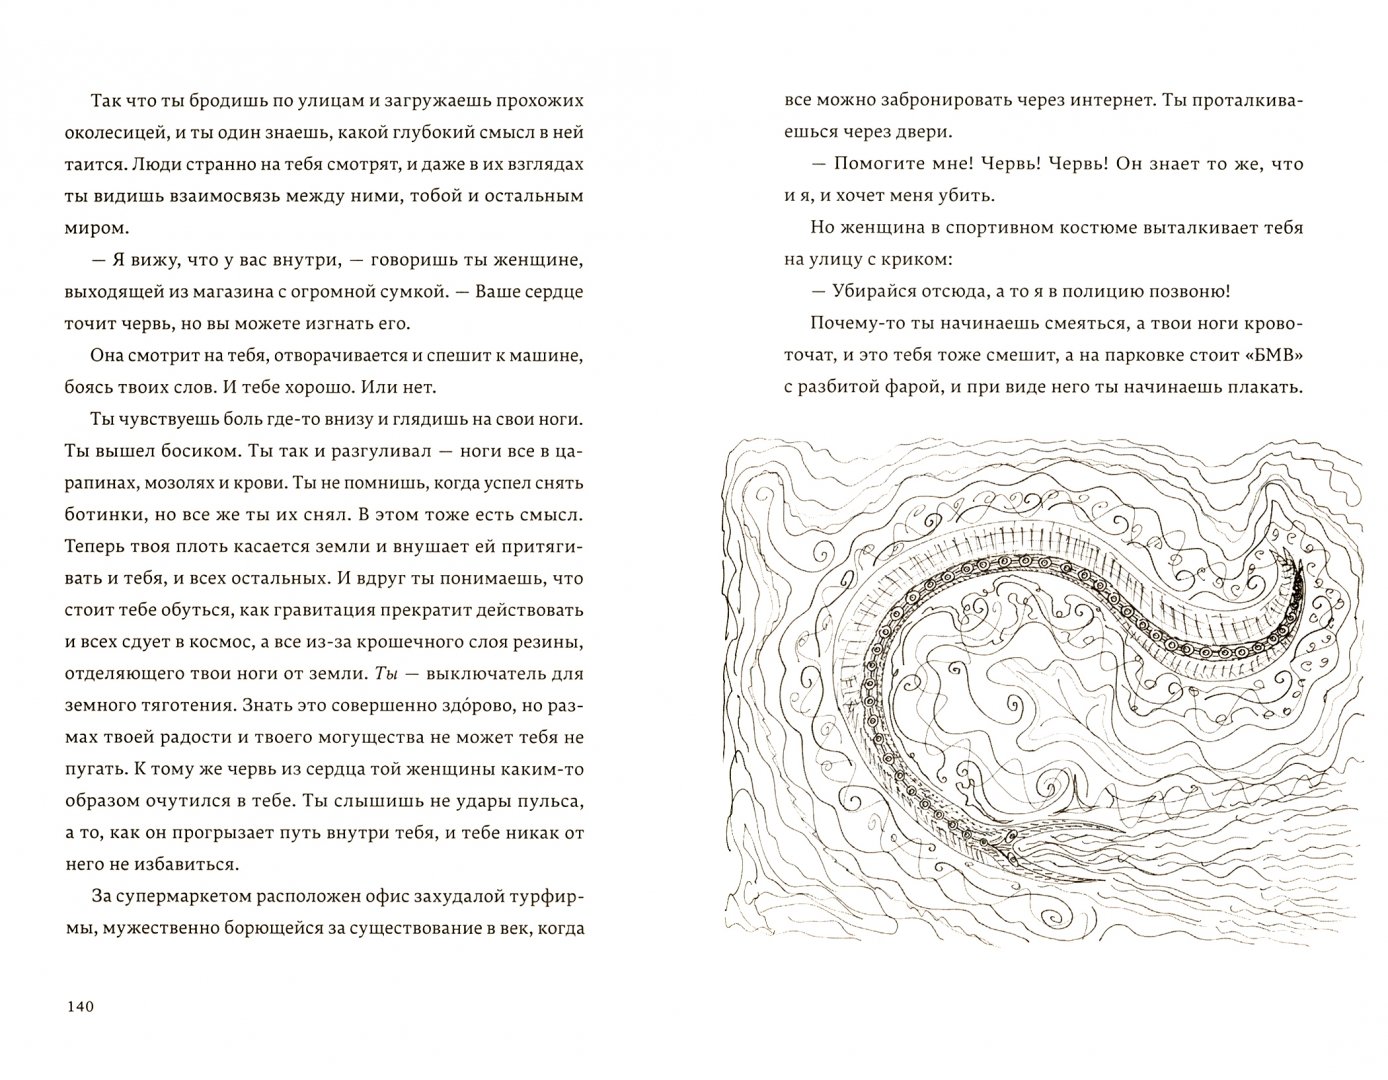 Иллюстрация 1 из 16 для Бездна Челленджера - Нил Шустерман | Лабиринт - книги. Источник: Лабиринт